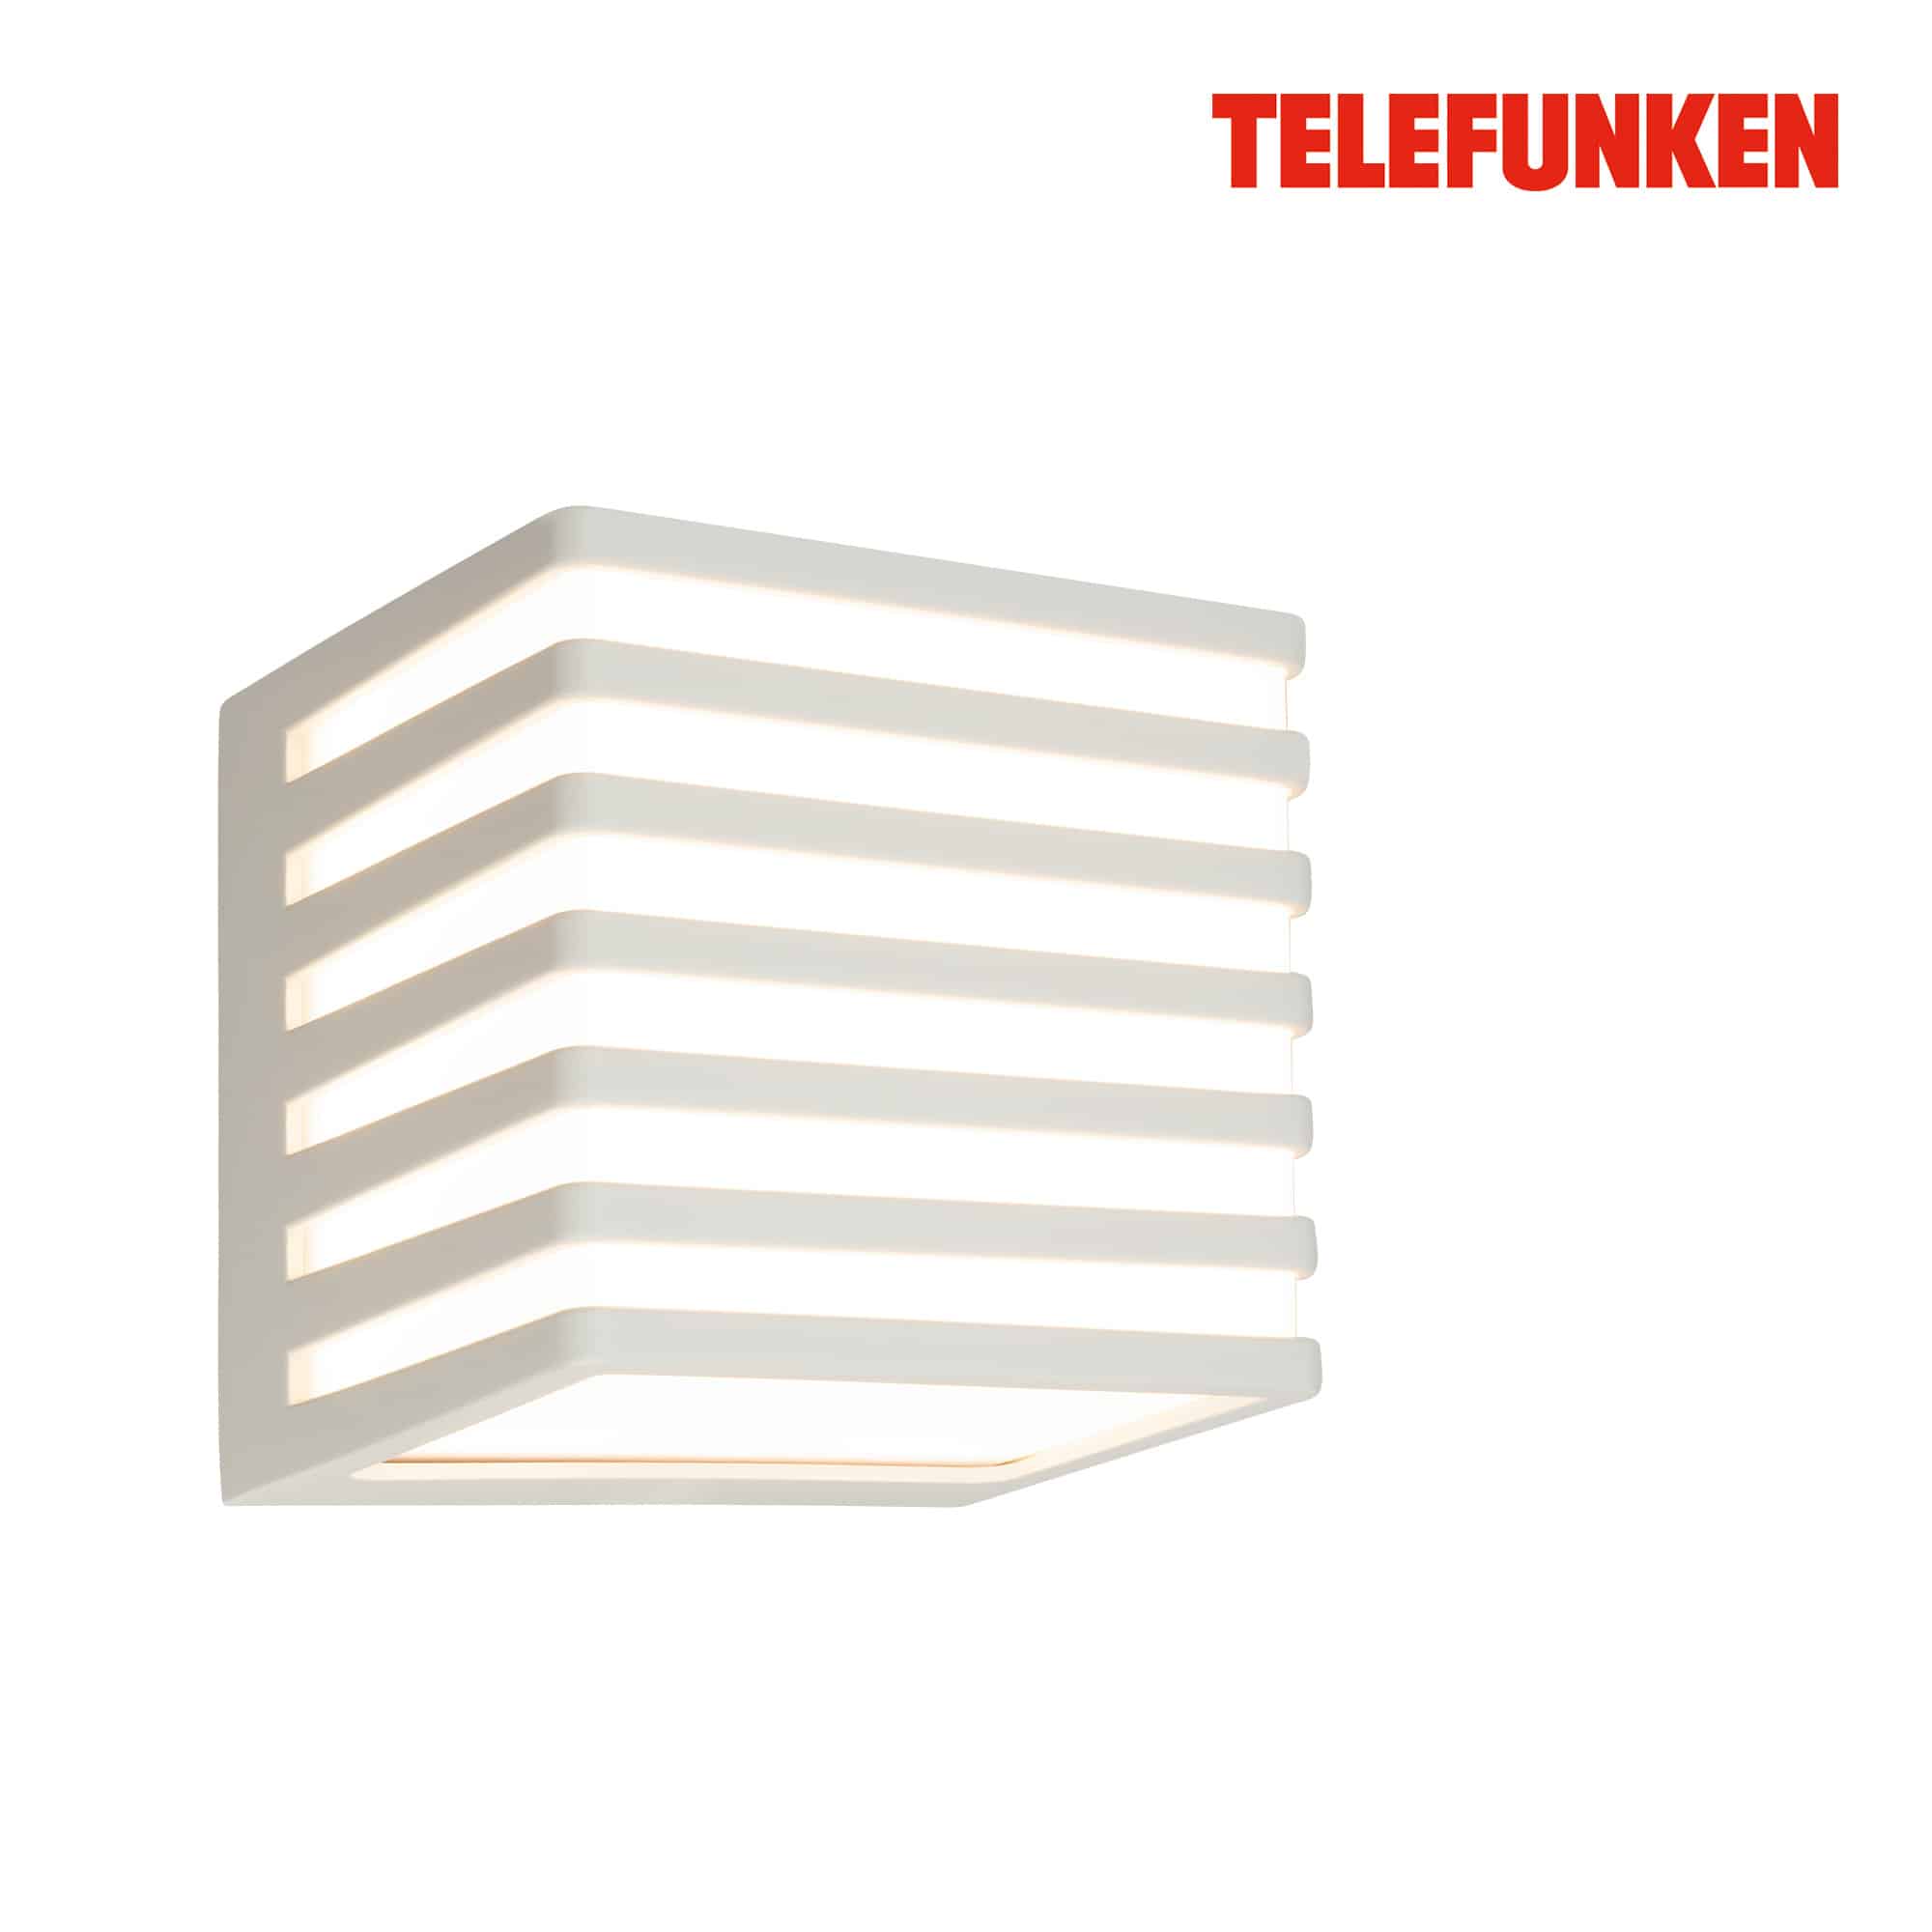 Telefunken Lampada da parete a LED, protezione dagli spruzzi d'acqua e dalla polvere, On/Off